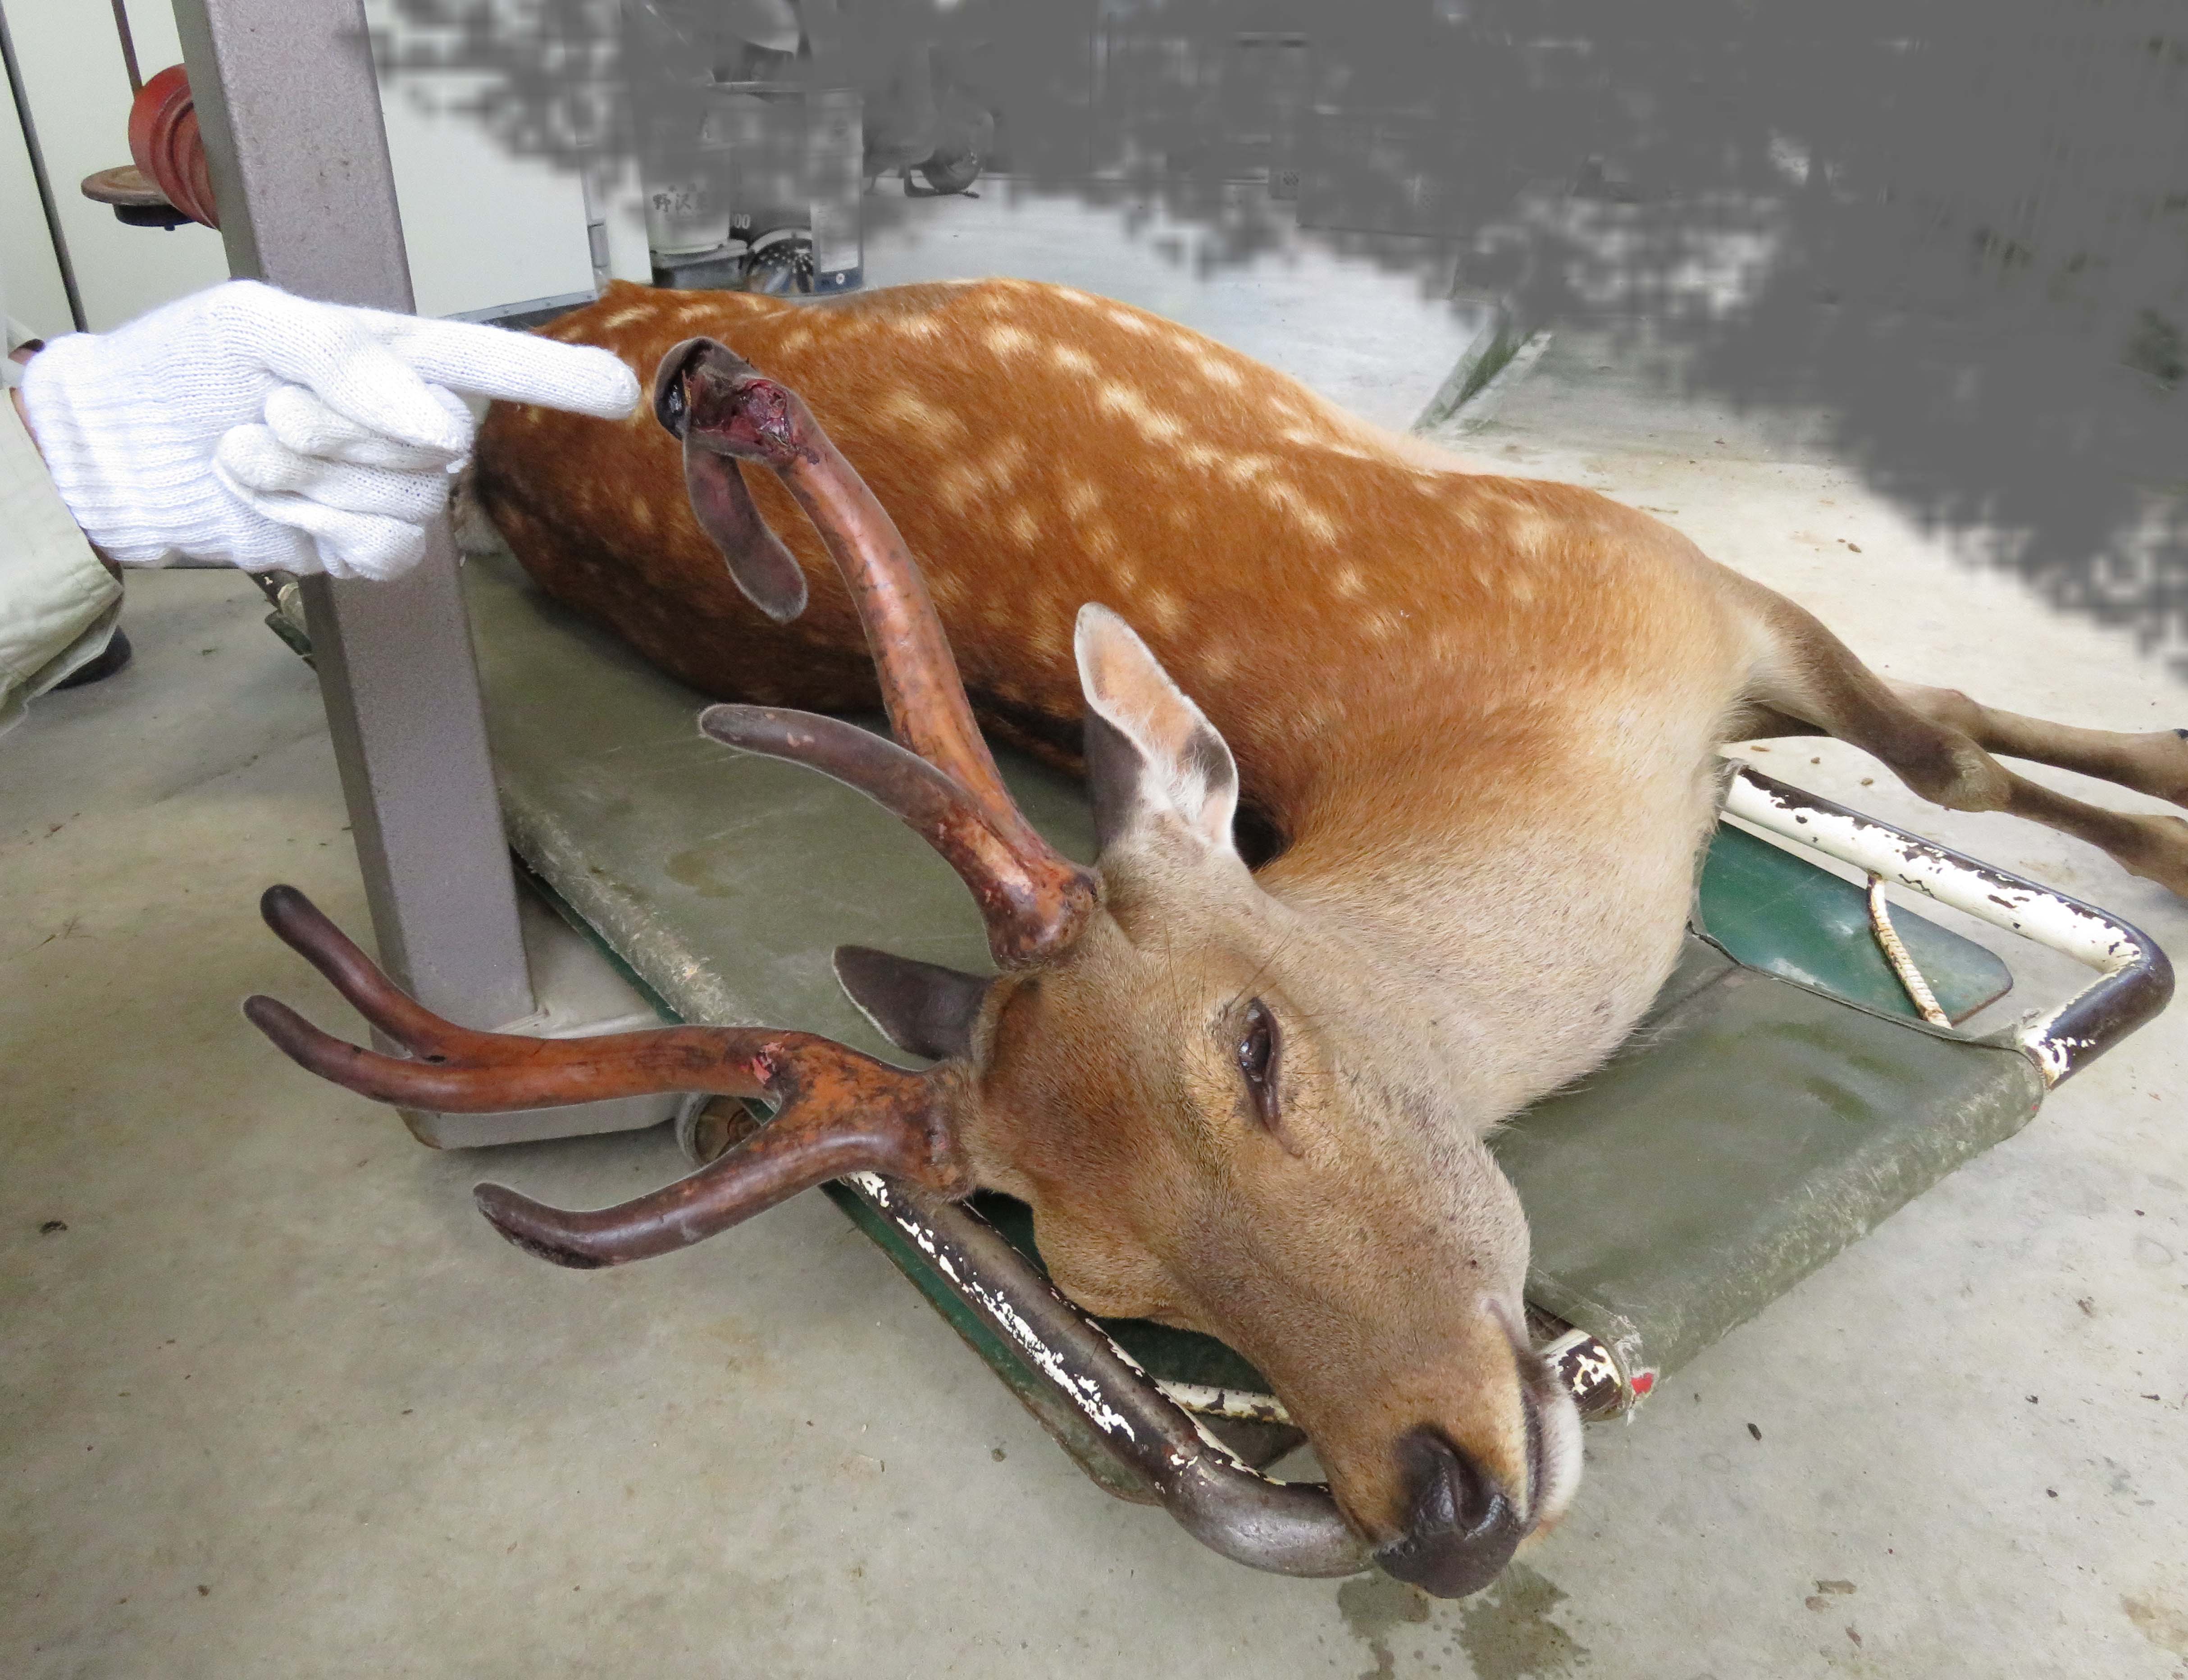 袋角损伤的小鹿受到保护– 一般財団法人奈良の鹿愛護会ブログ｜イベント情報と日々のこと